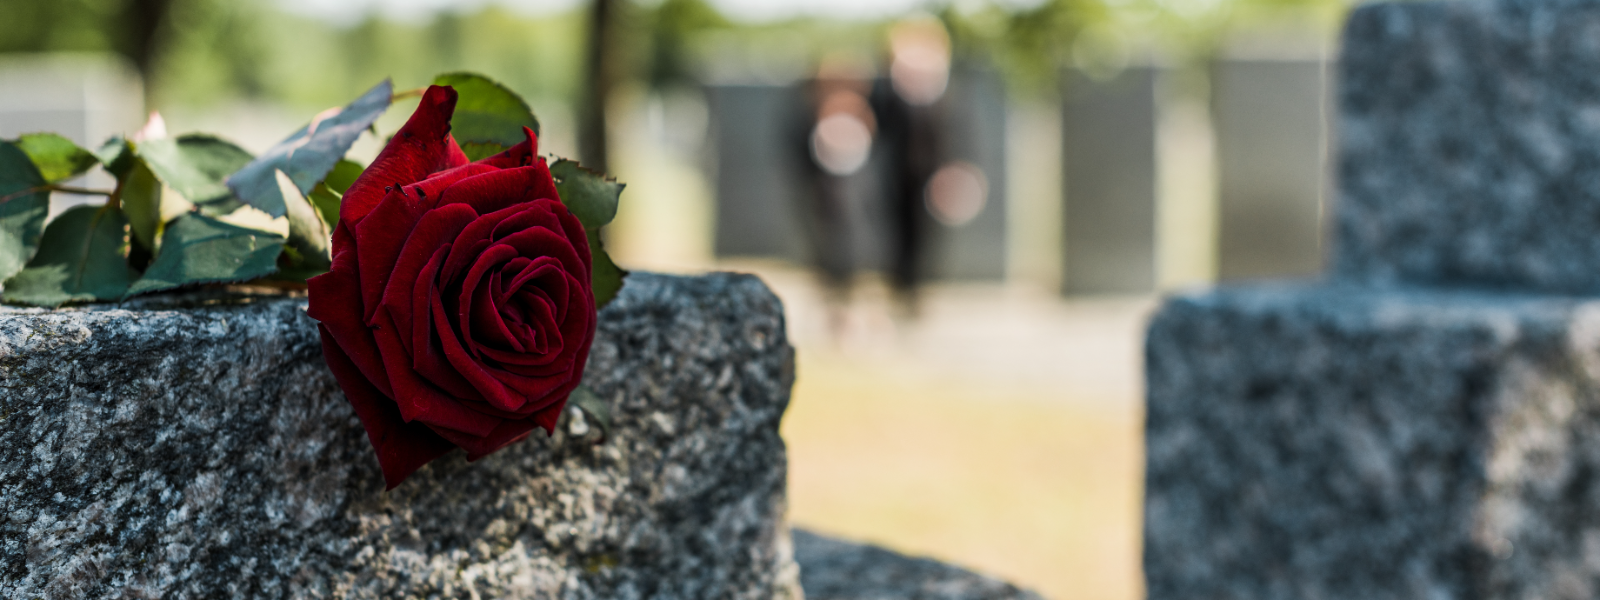 KALMUHOOLDUS OÜ - Kalmuhooldus OÜ on spetsialiseerunud hauaplatside hooldusele, haljastustöödele ja sellega seotud lah...